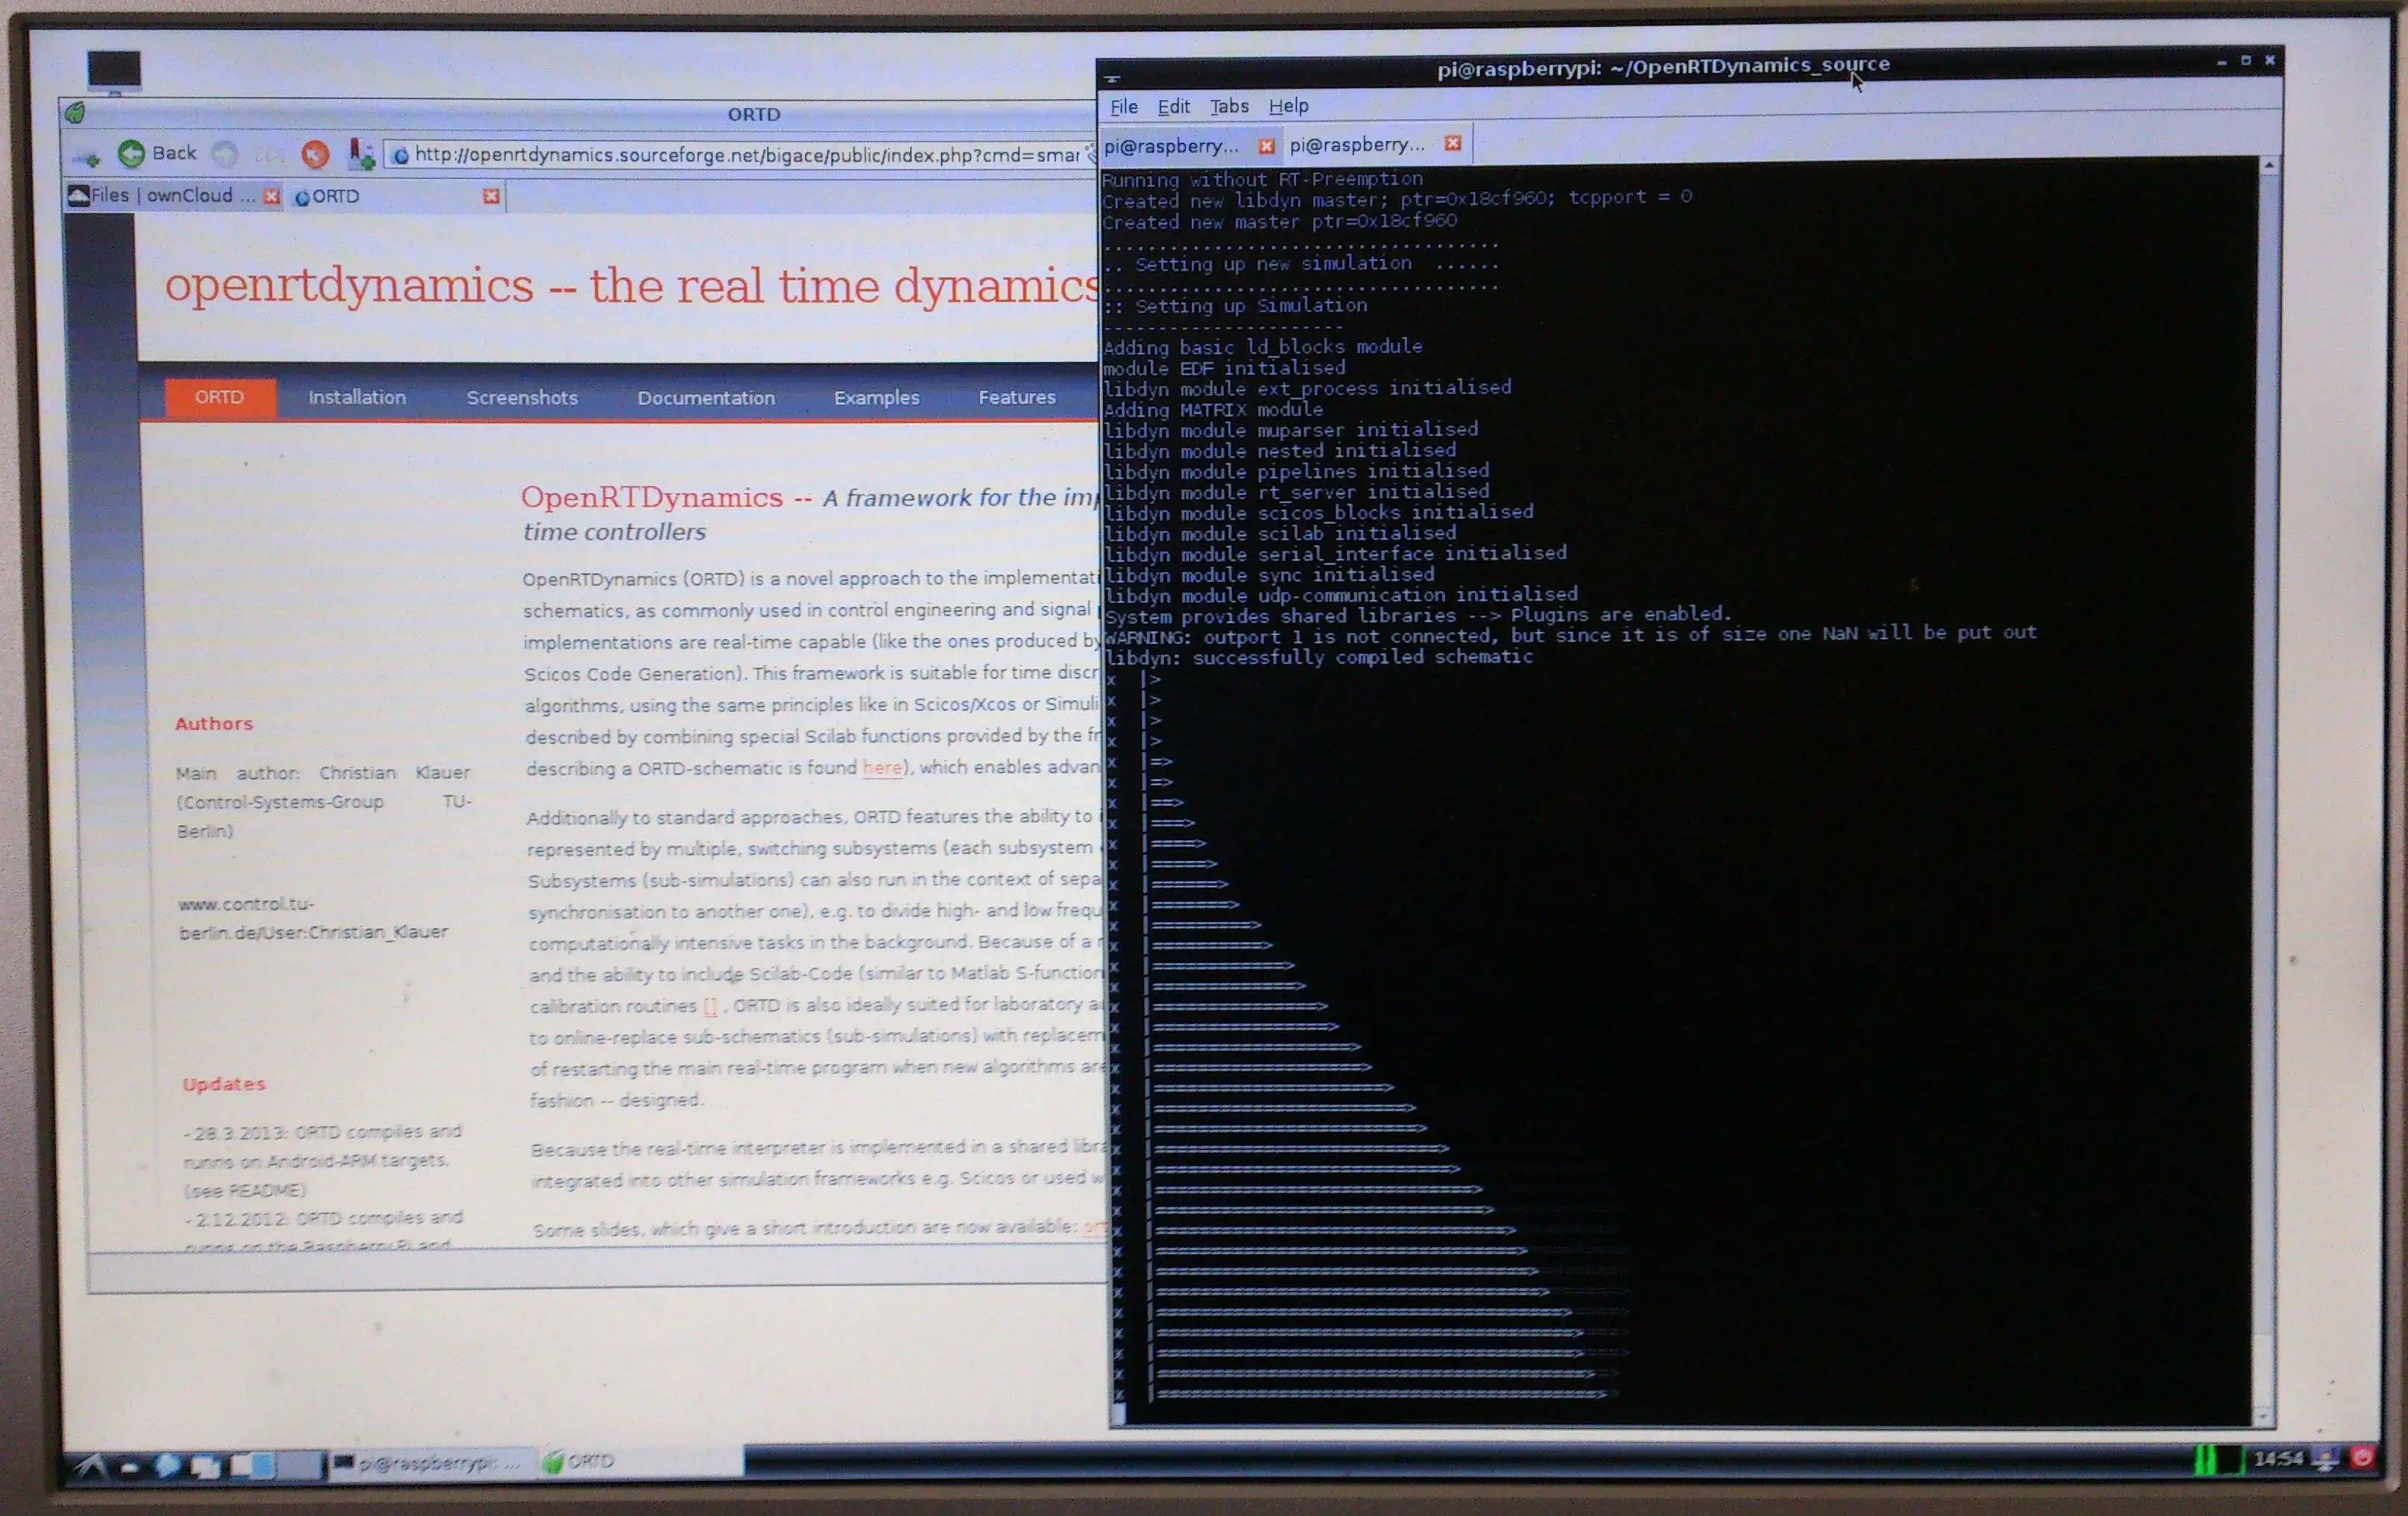 Muat turun alat web atau aplikasi web OpenRTDynamics untuk dijalankan di Linux dalam talian